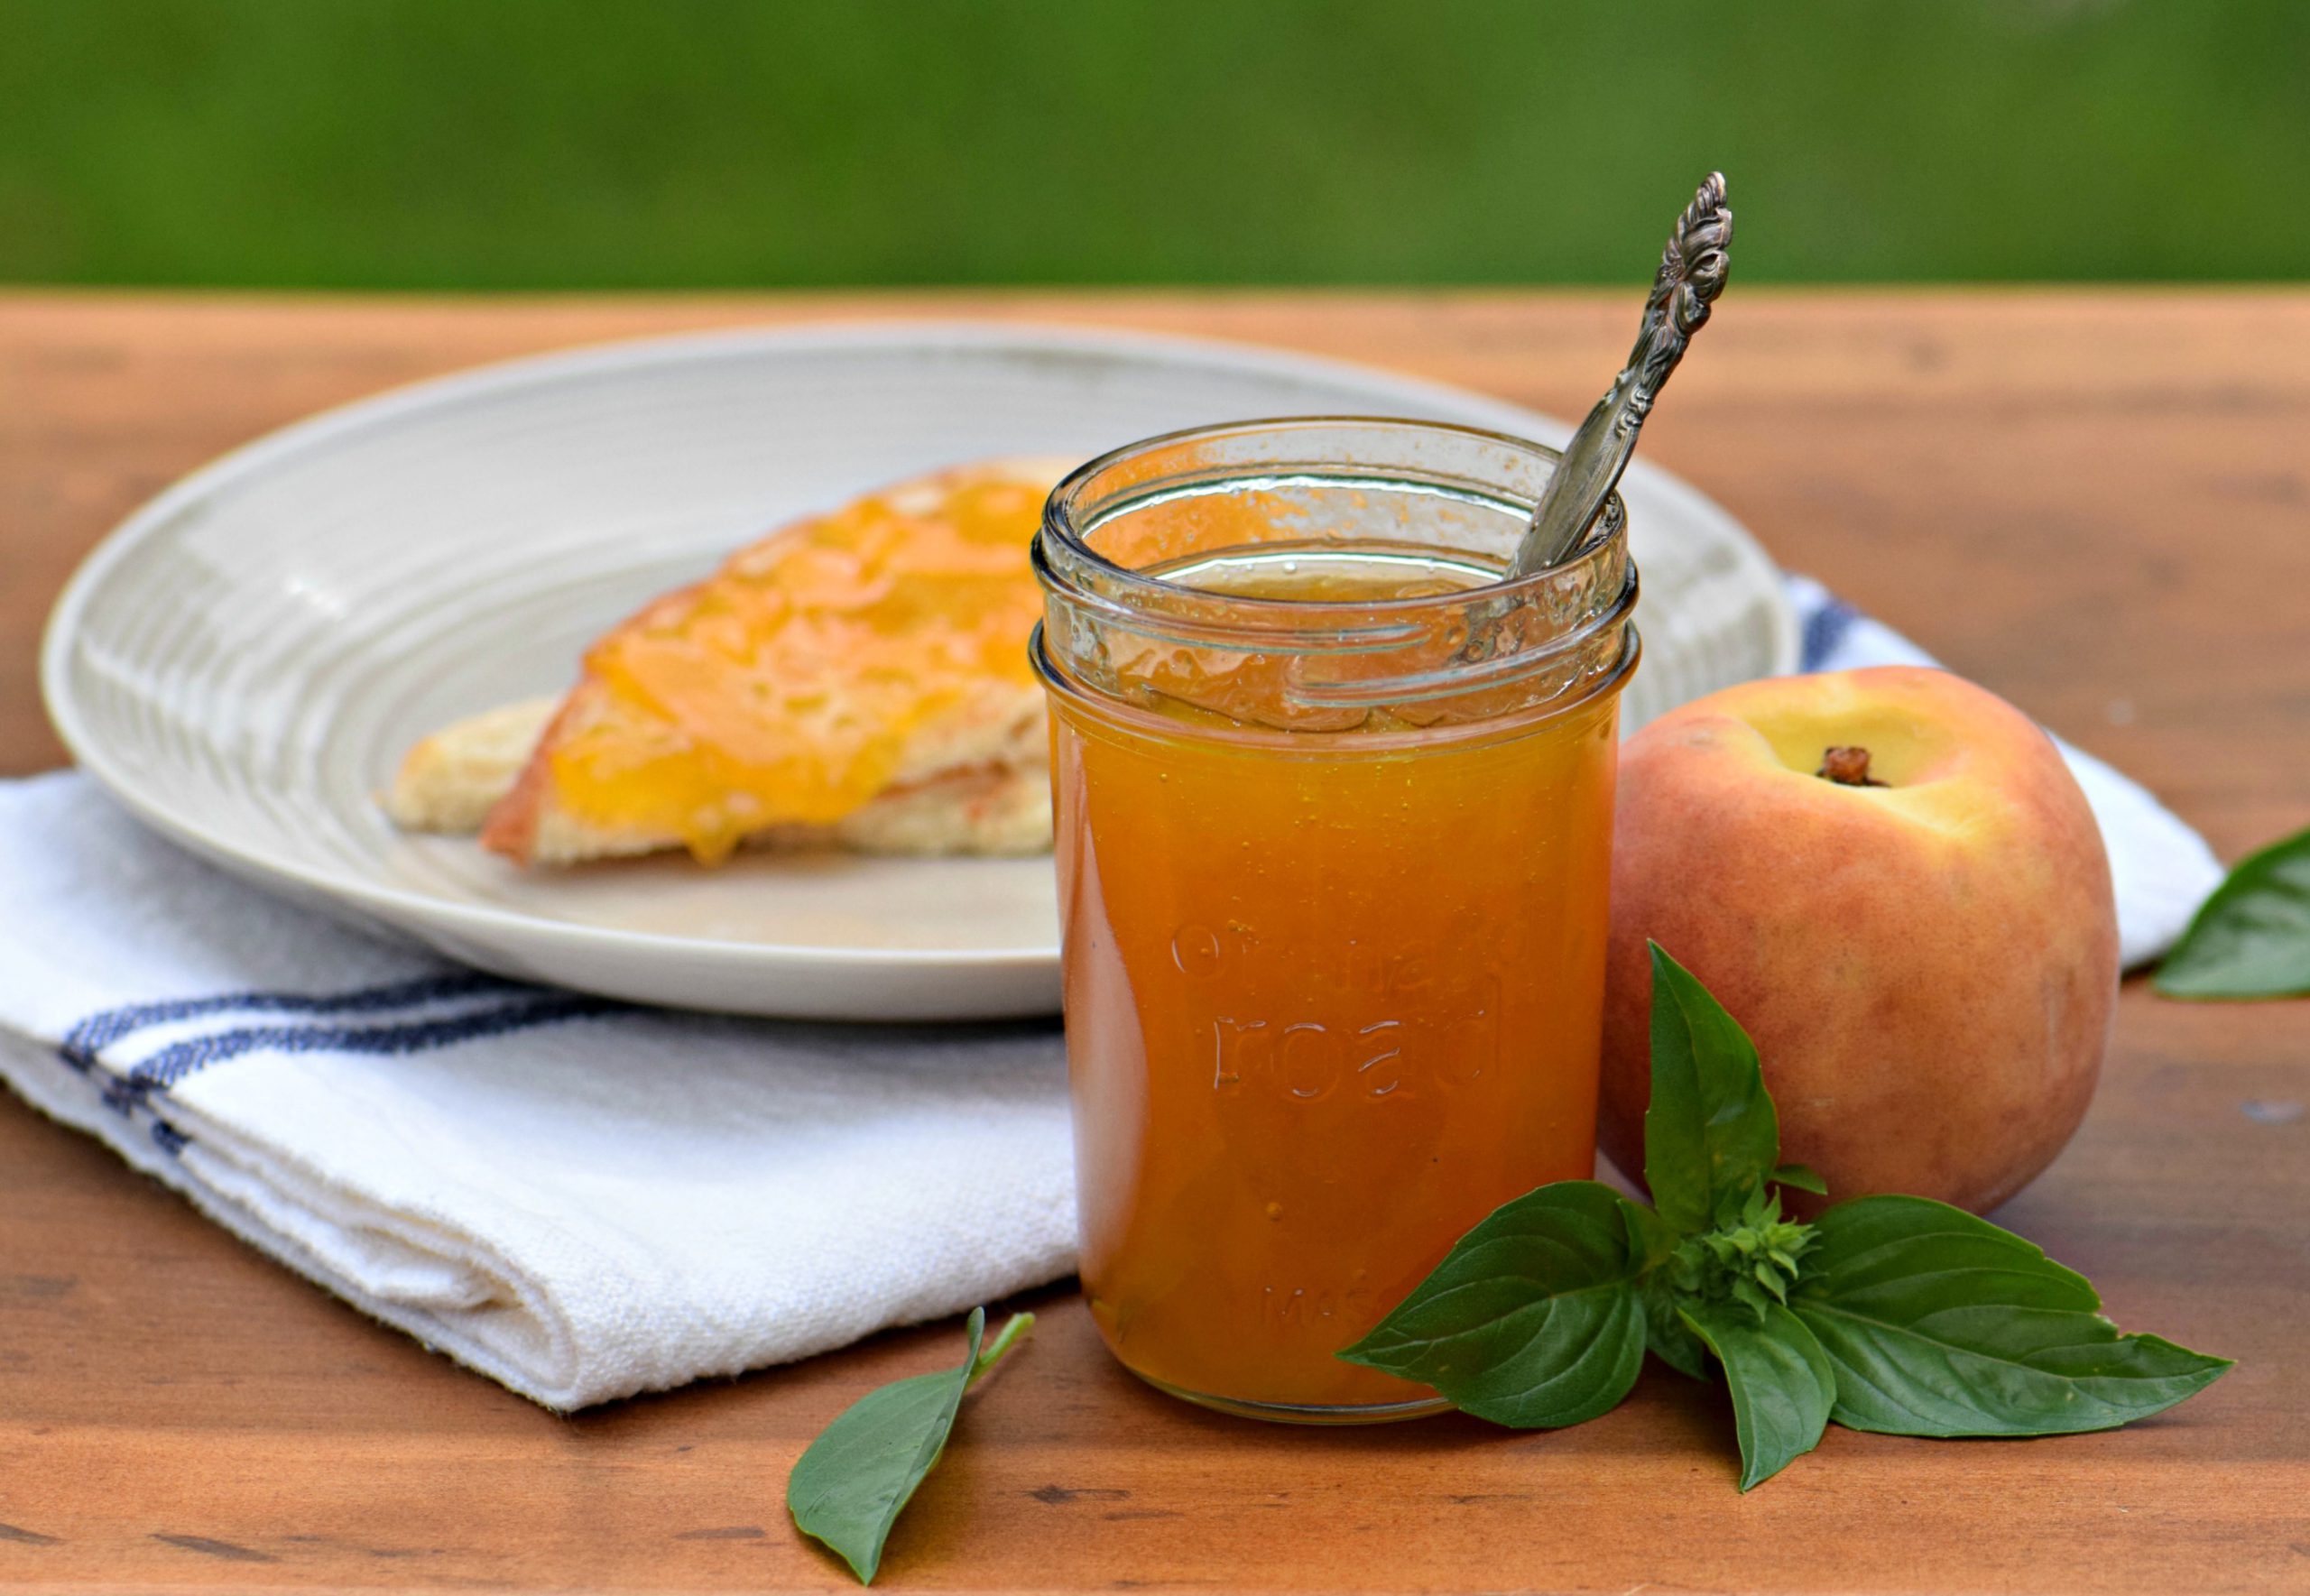 How to Make Jam, Like This Peach Basil Recipe